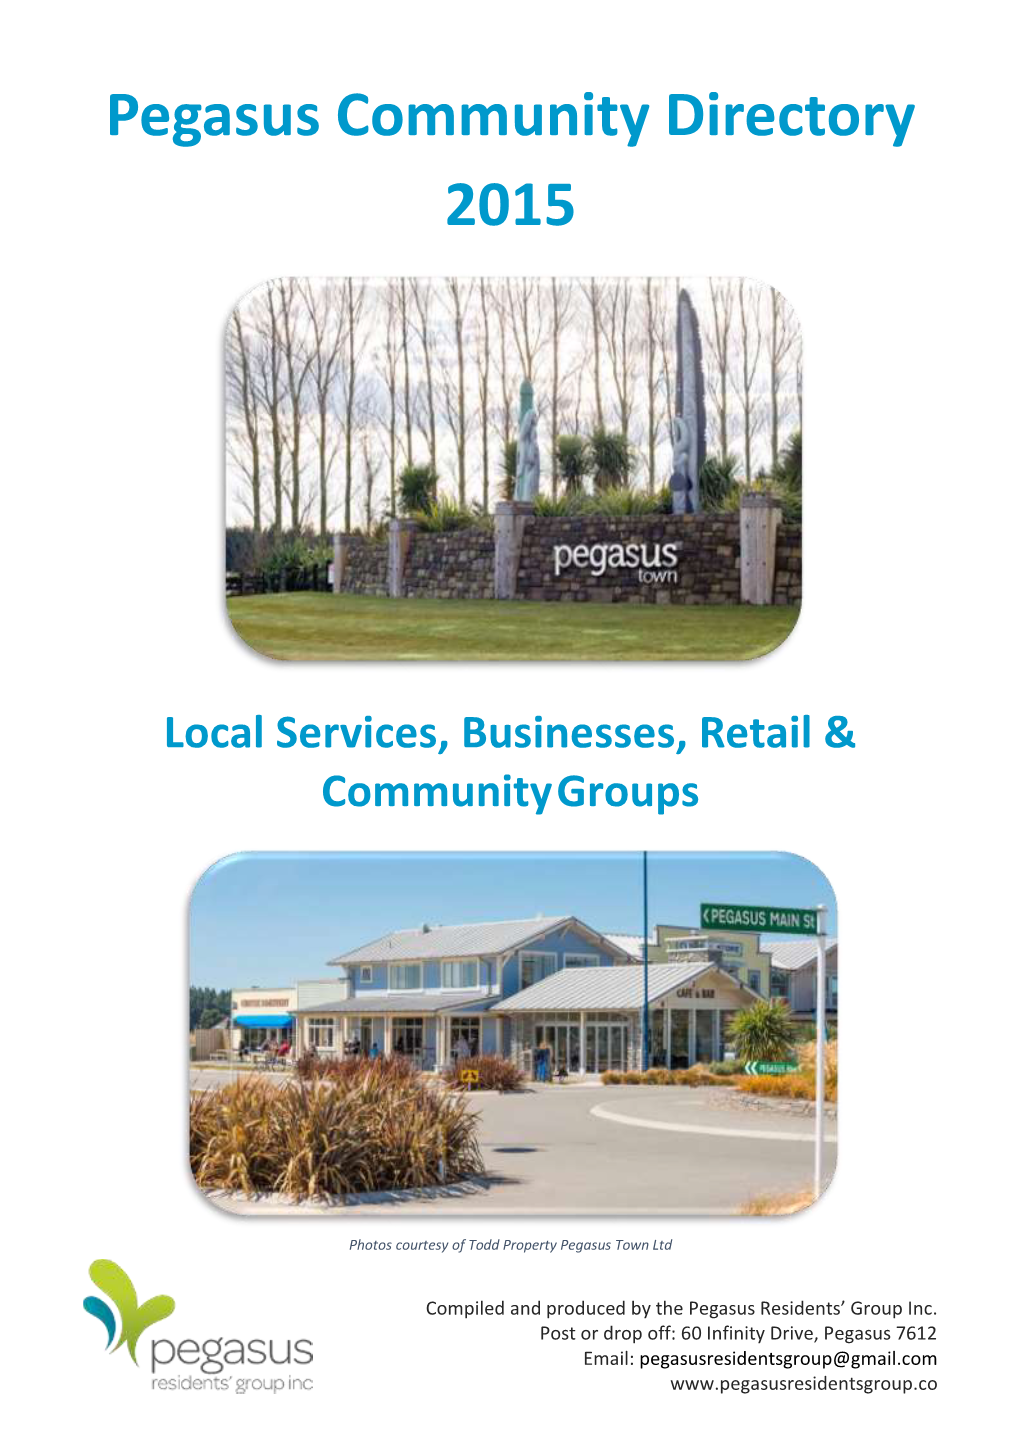 Pegasus Community Directory 2015